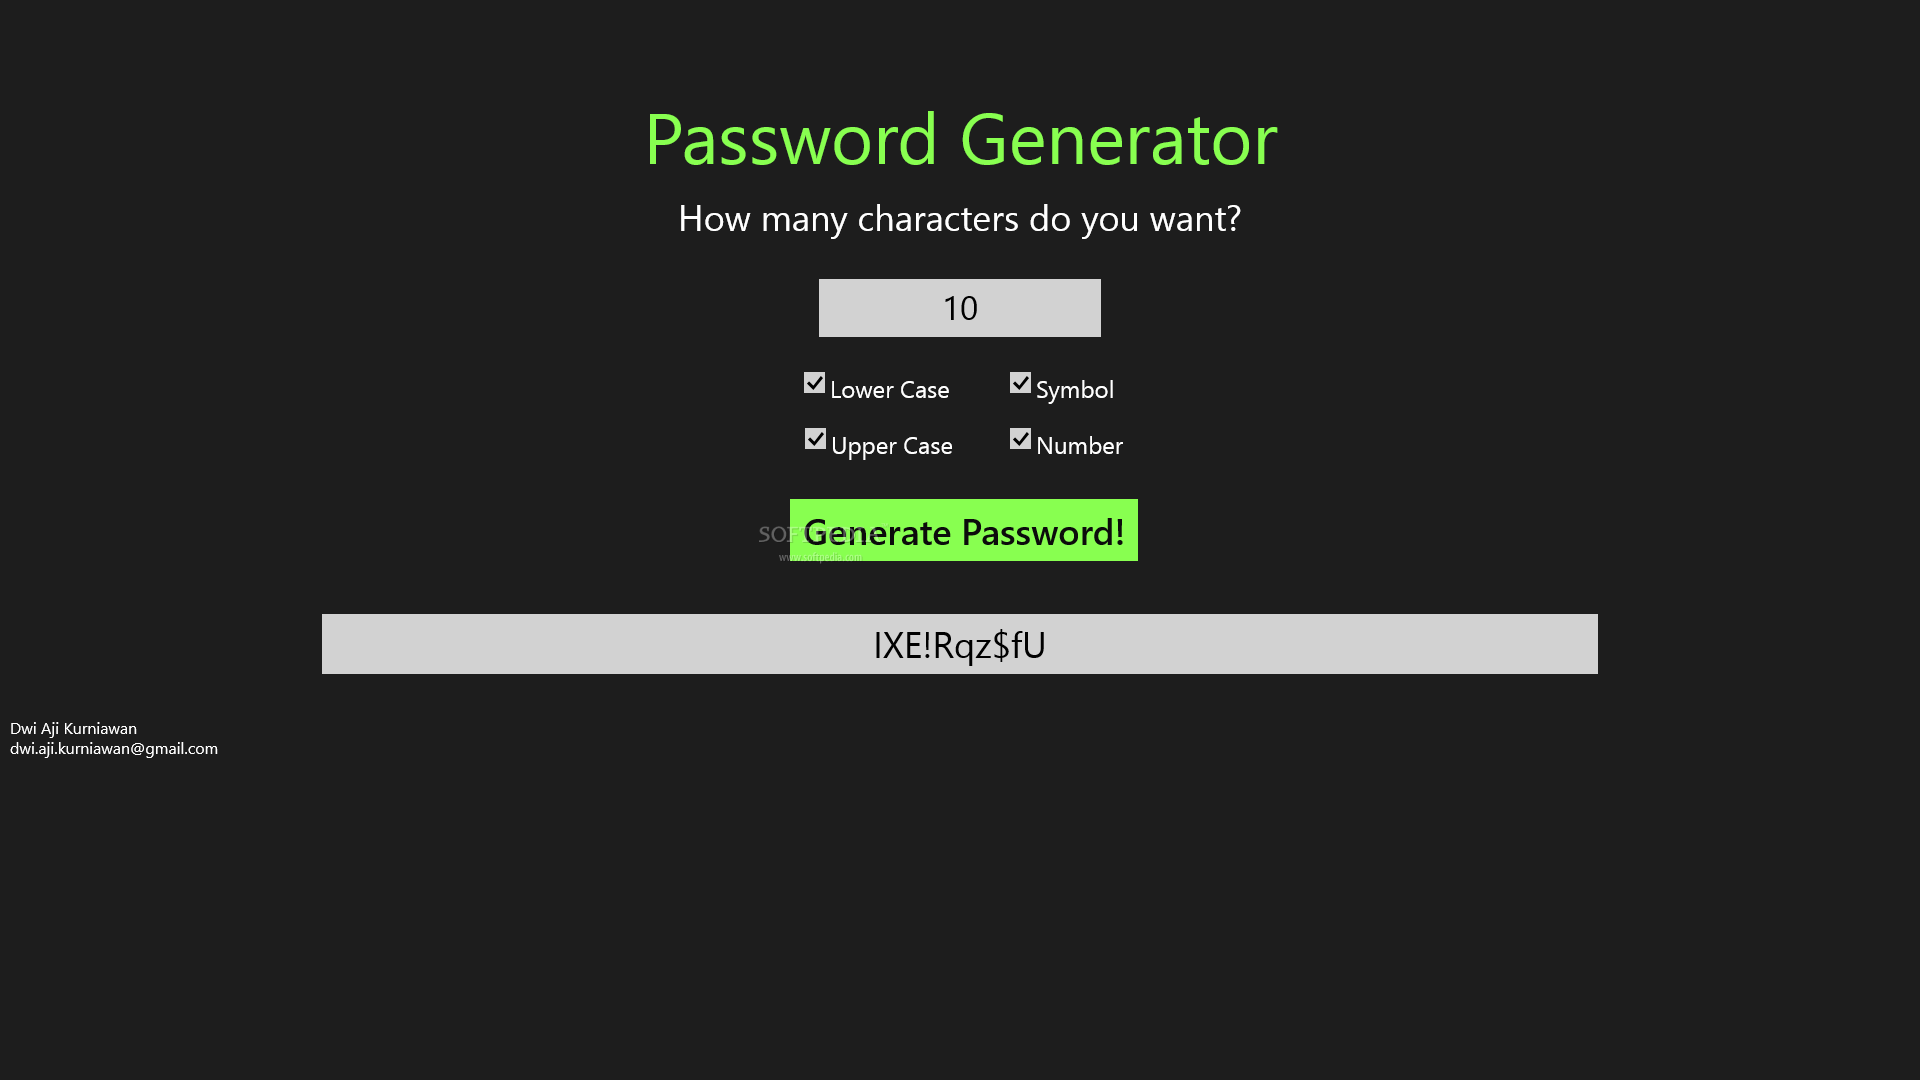 PasswordGenerator 23.6.13 free download